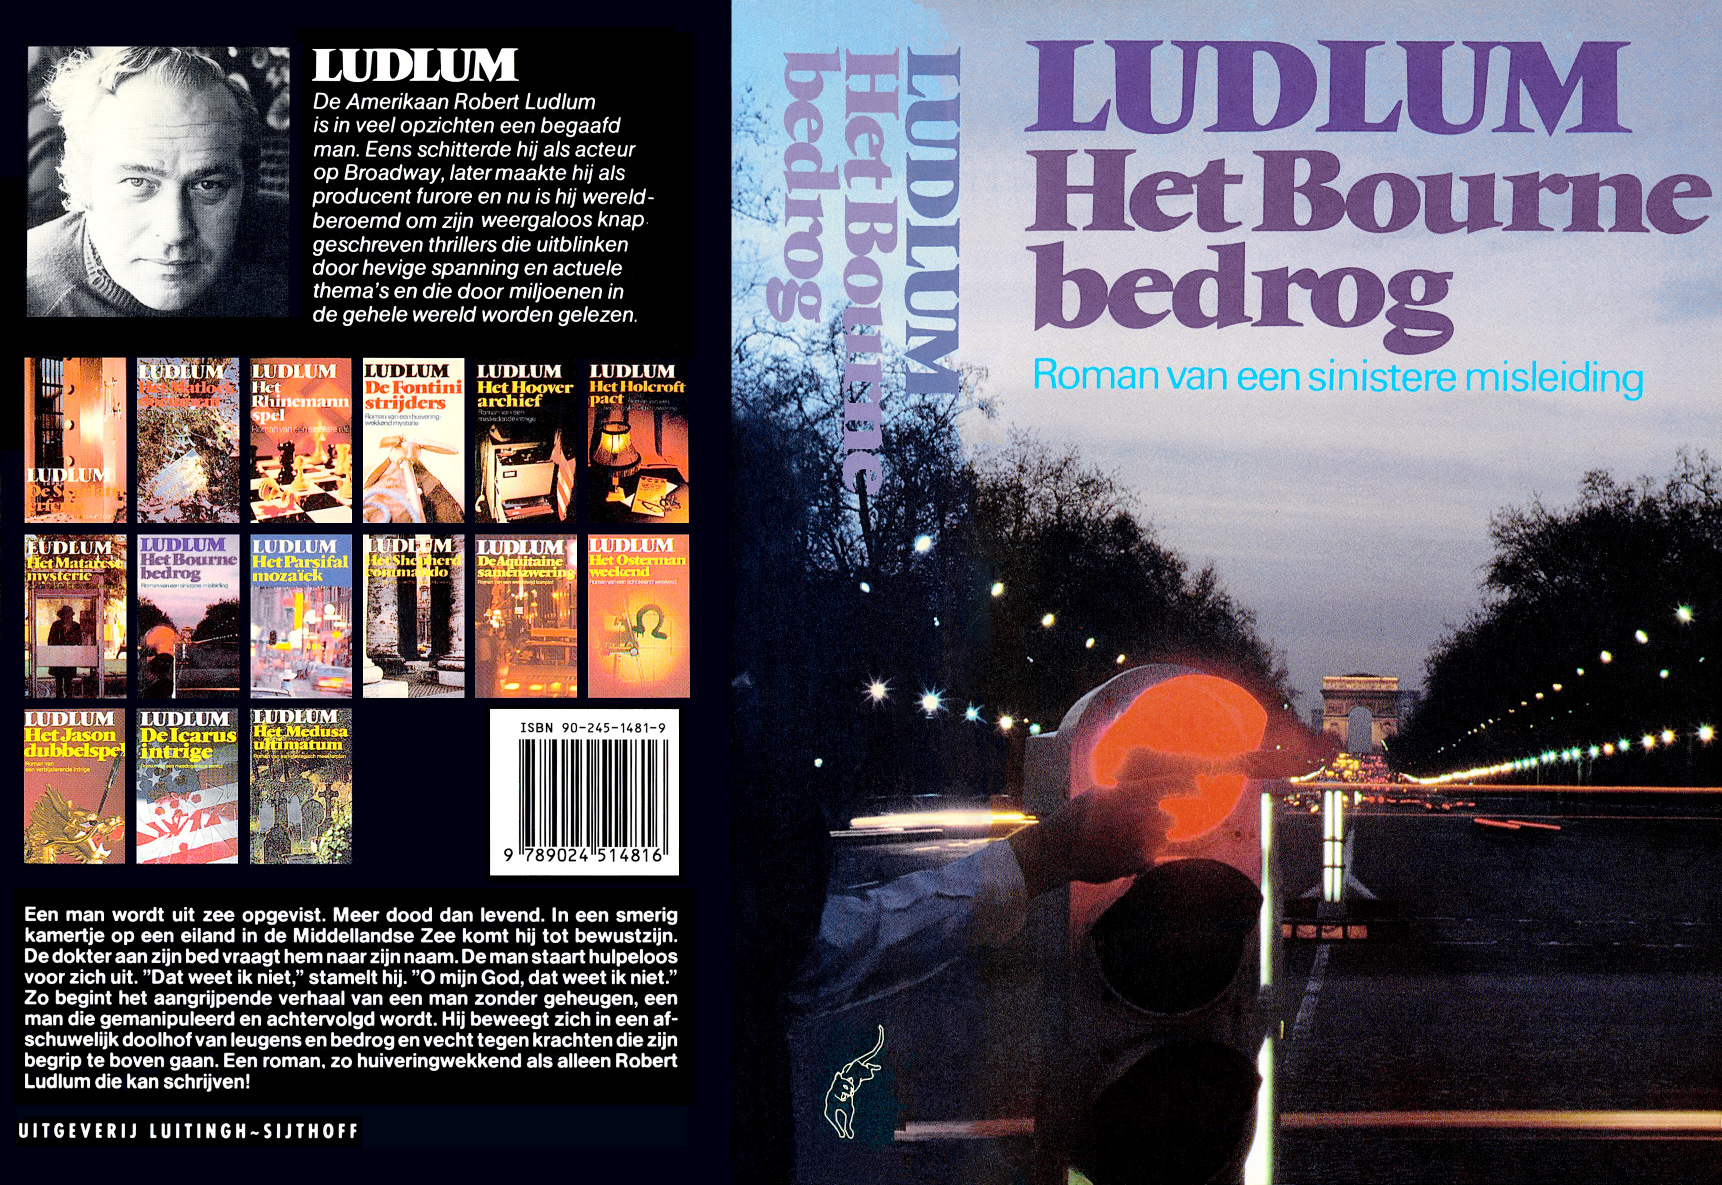 Robert Ludlum - Het Bourne bedrog (1980) by NA